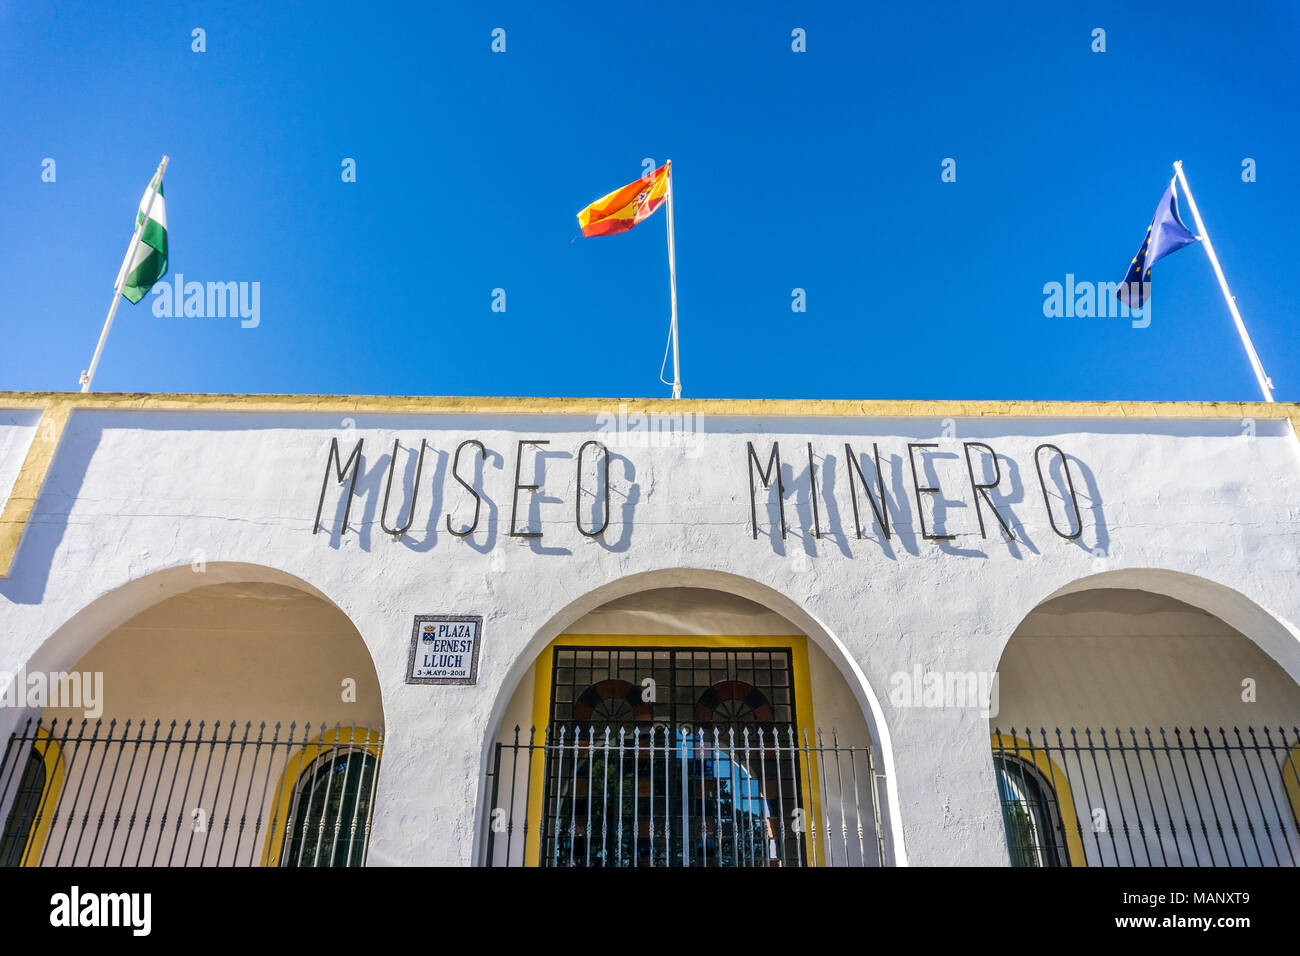 Minas de Riotinto, Espagne - 17 janvier 2018 : Mining museum building en Minas de Riotinto avec trois drapeaux au-dessus de l'inscription, l'Andalousie Banque D'Images